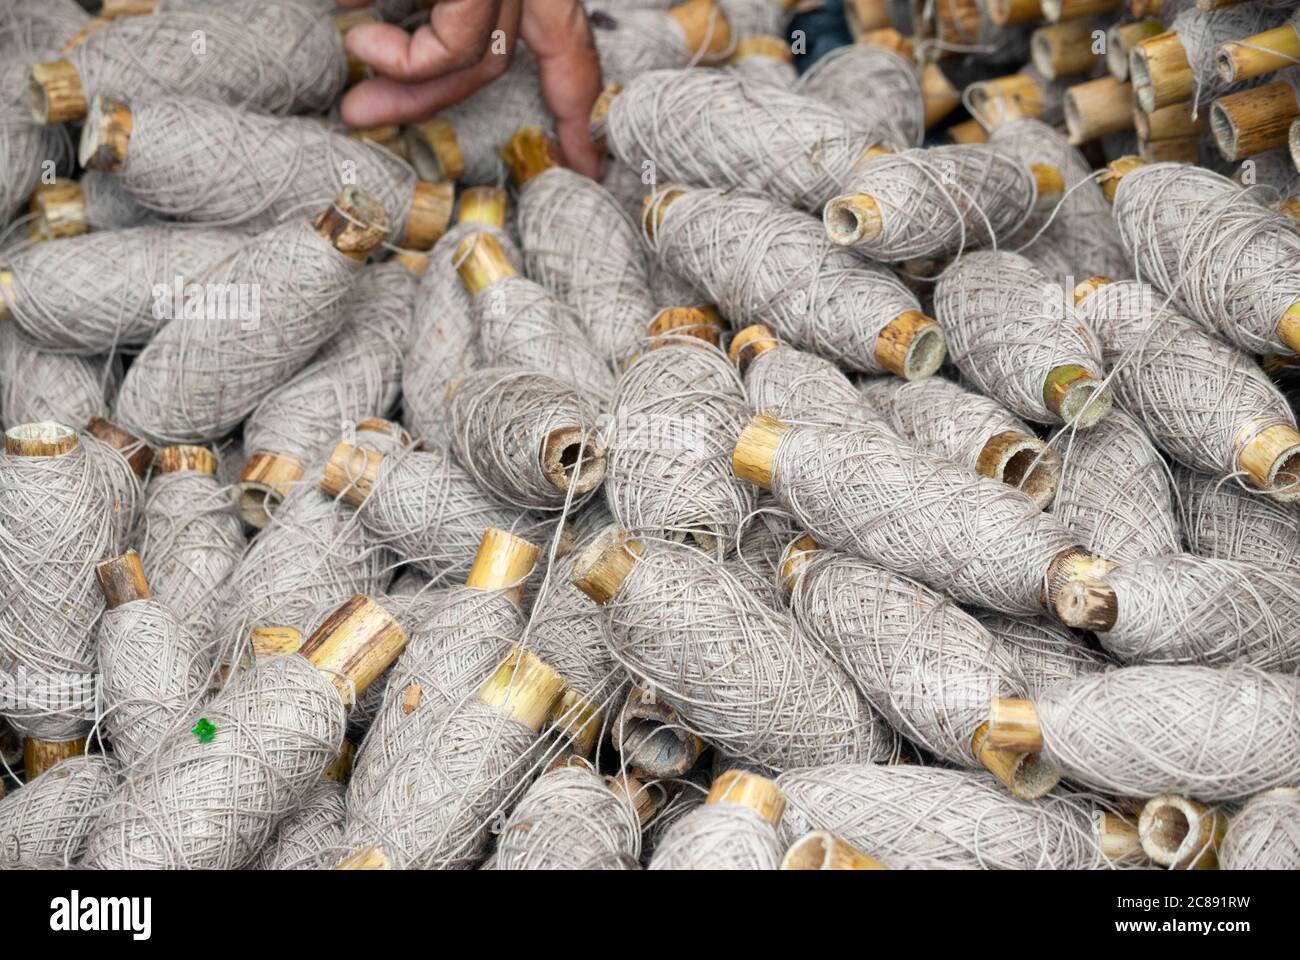 Gruppe von Fäden aus Baumwolle, Textilindustrie in Guatemala, handgemachte  Textilien aus Baumwolle, Quelle der Wirtschaft und Beschäftigung  Stockfotografie - Alamy